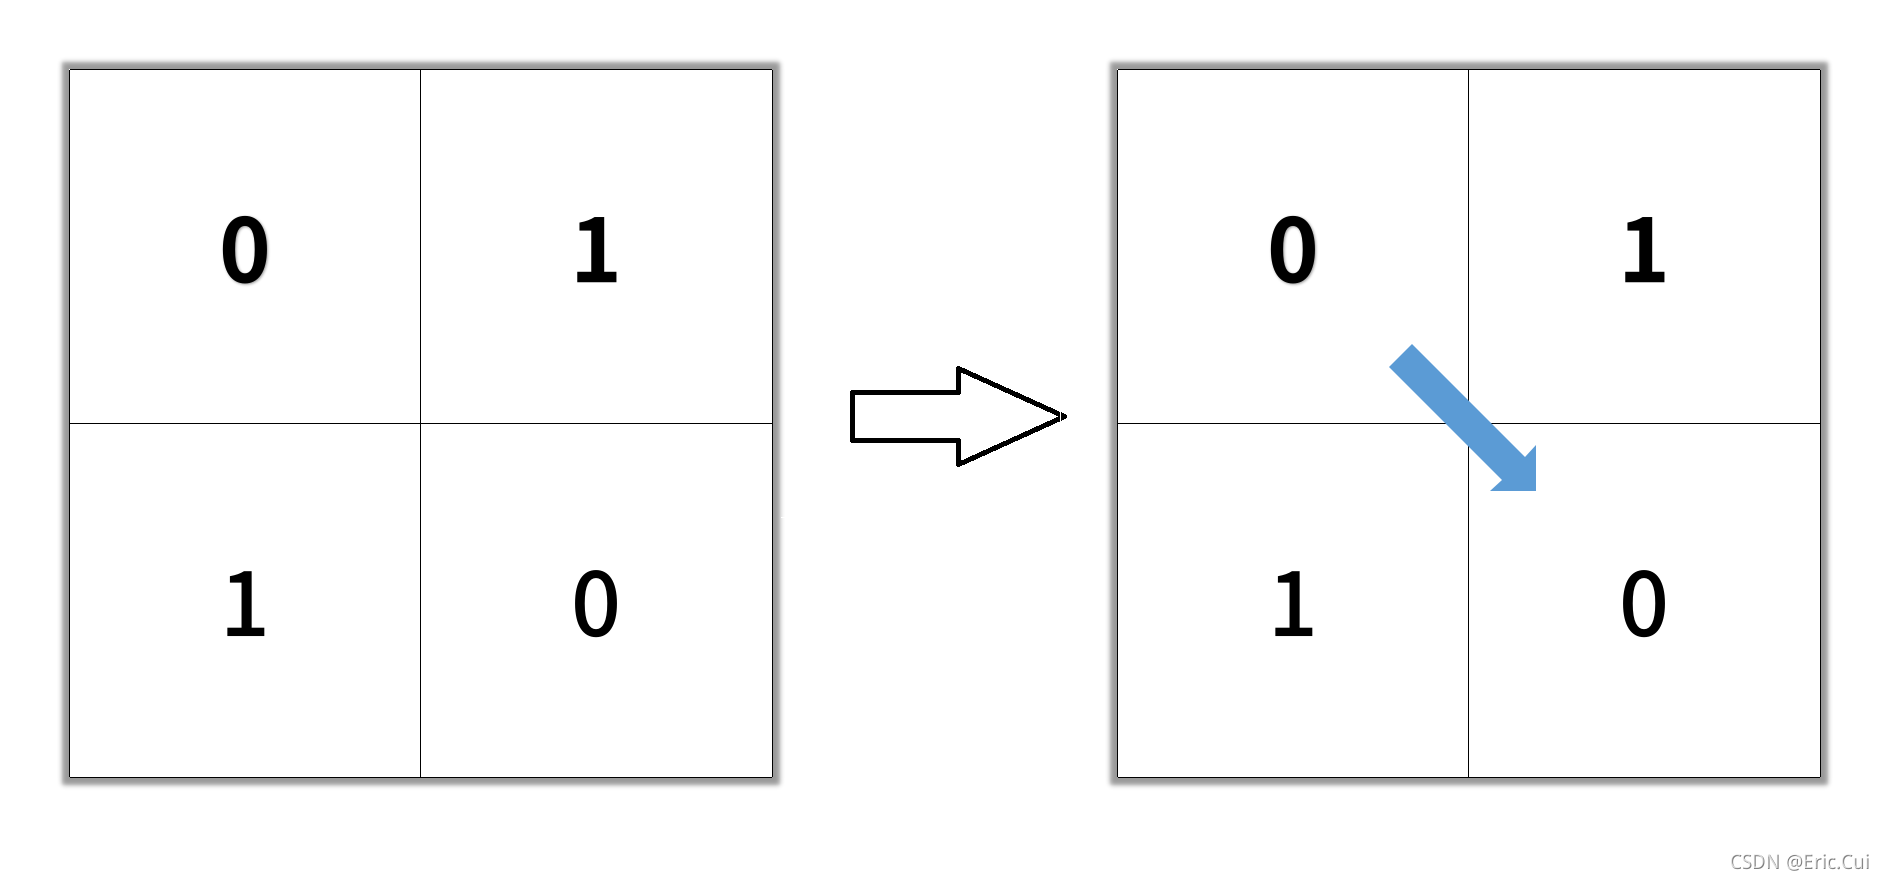 二进制矩阵中的最短路径 Shortest Path In Binary Matrix